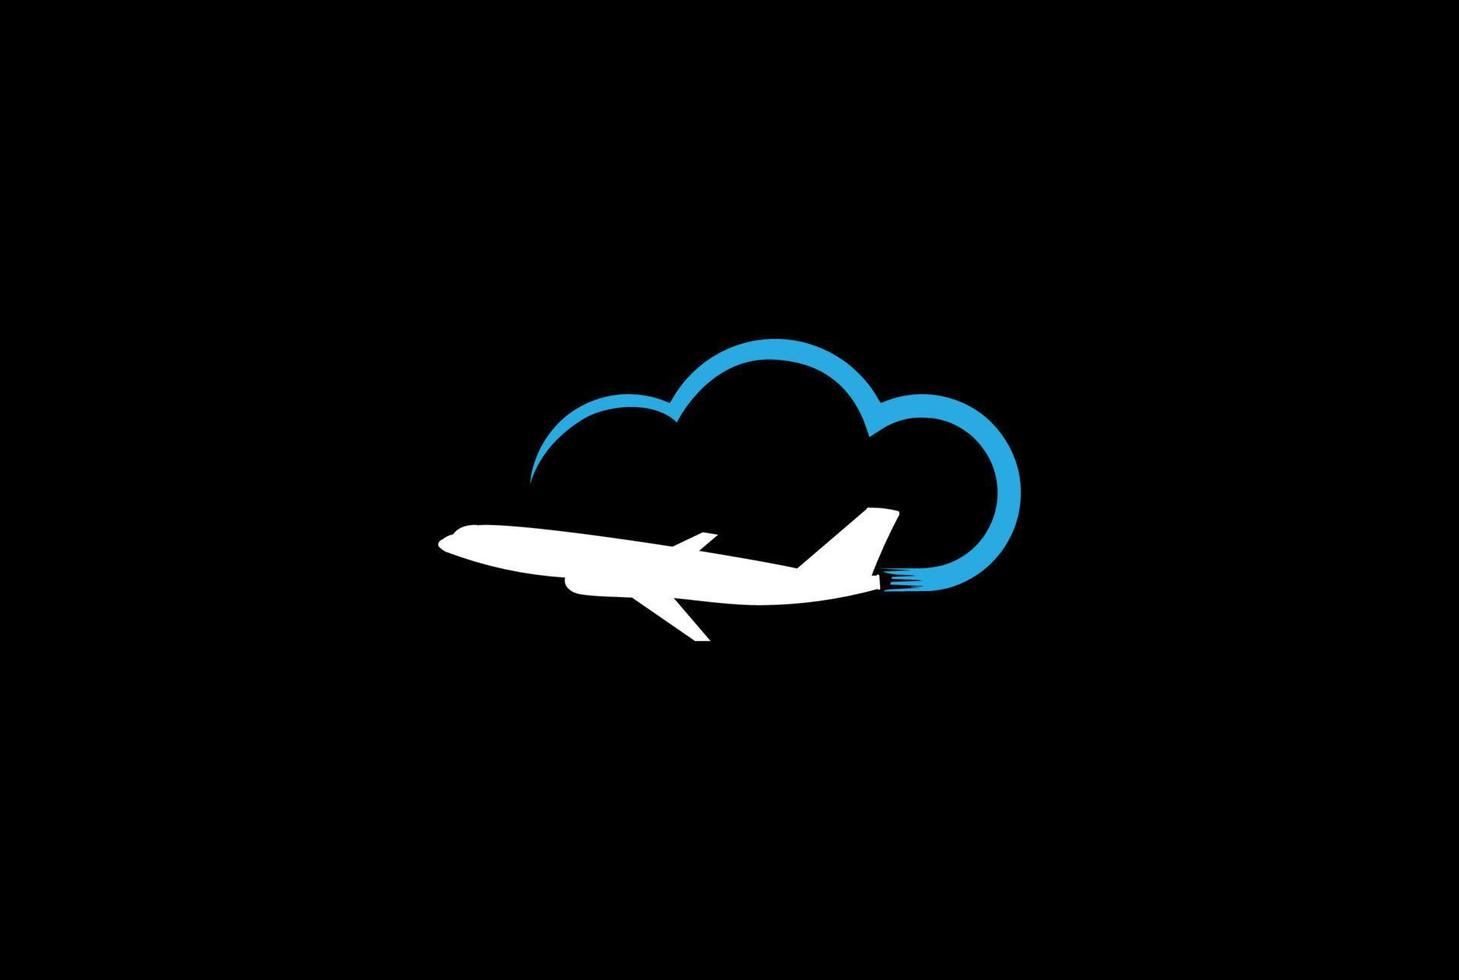 einfaches minimalistisches Wolkenflugzeug für Reisetechnologie-Logo-Design-Vektor vektor